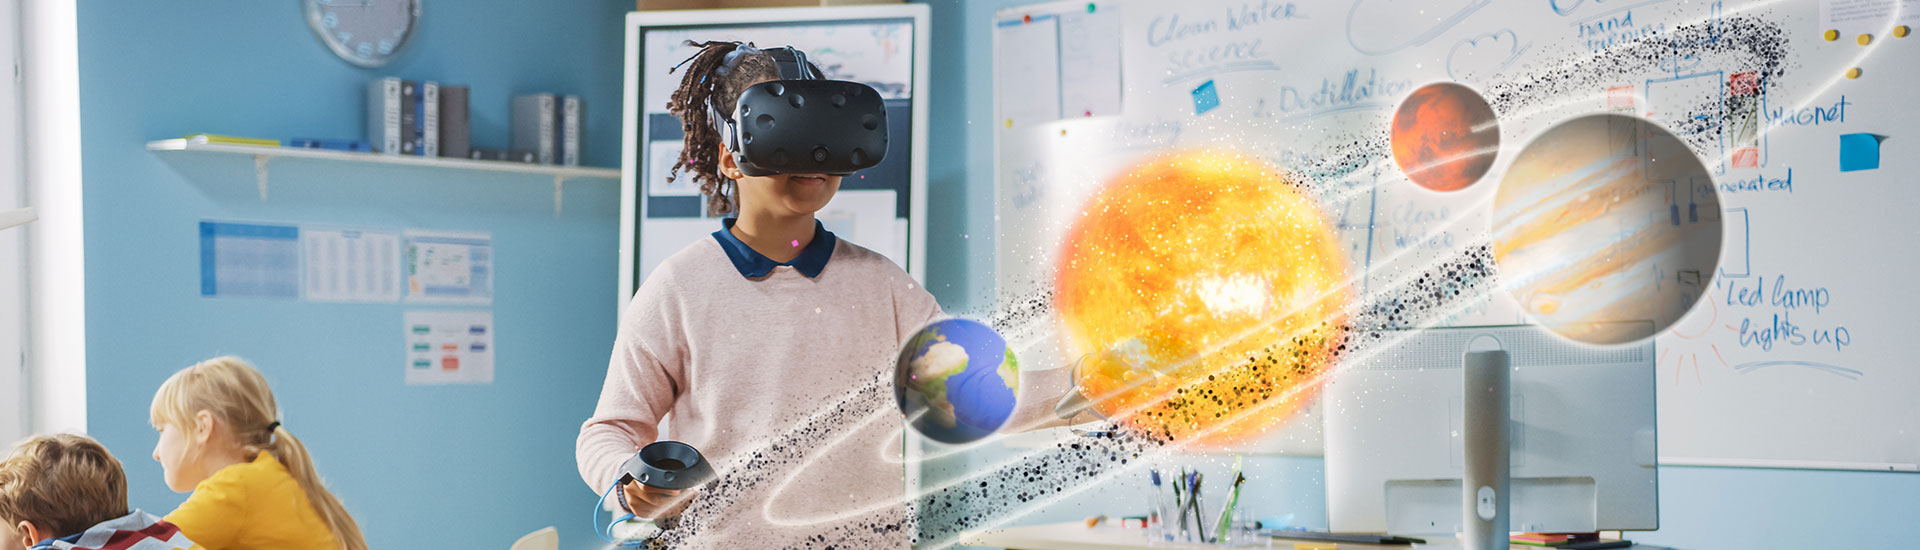 VR in education